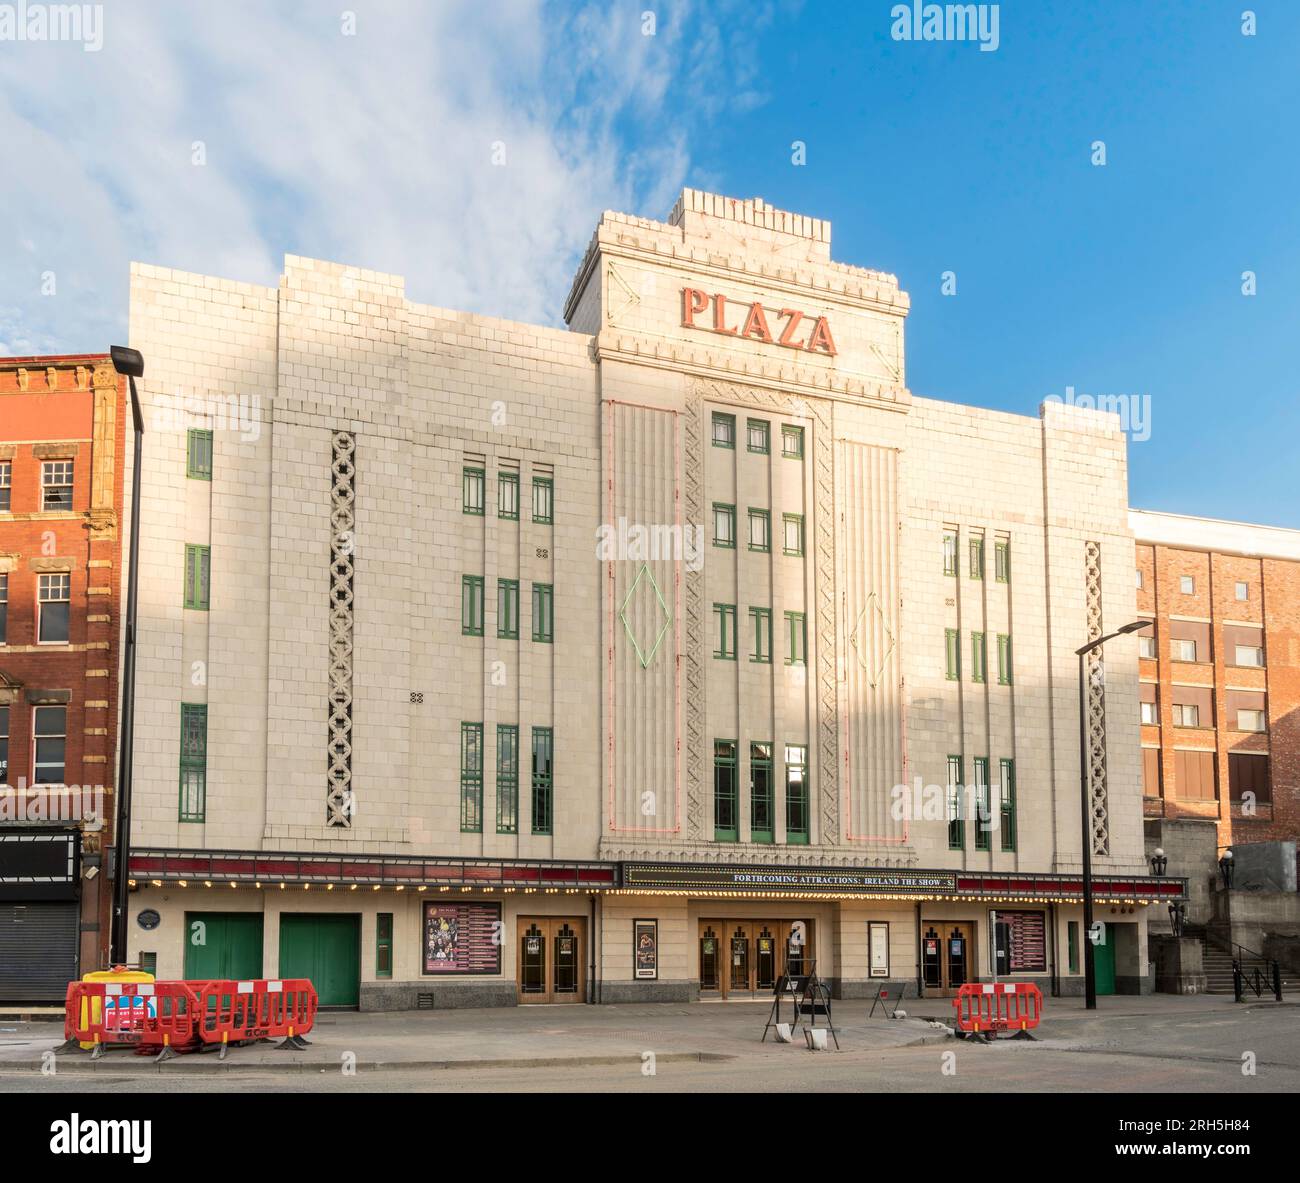 Das denkmalgeschützte Plaza-Kino- und Theatergebäude im Art déco-Stil in Stockport, England, Großbritannien Stockfoto